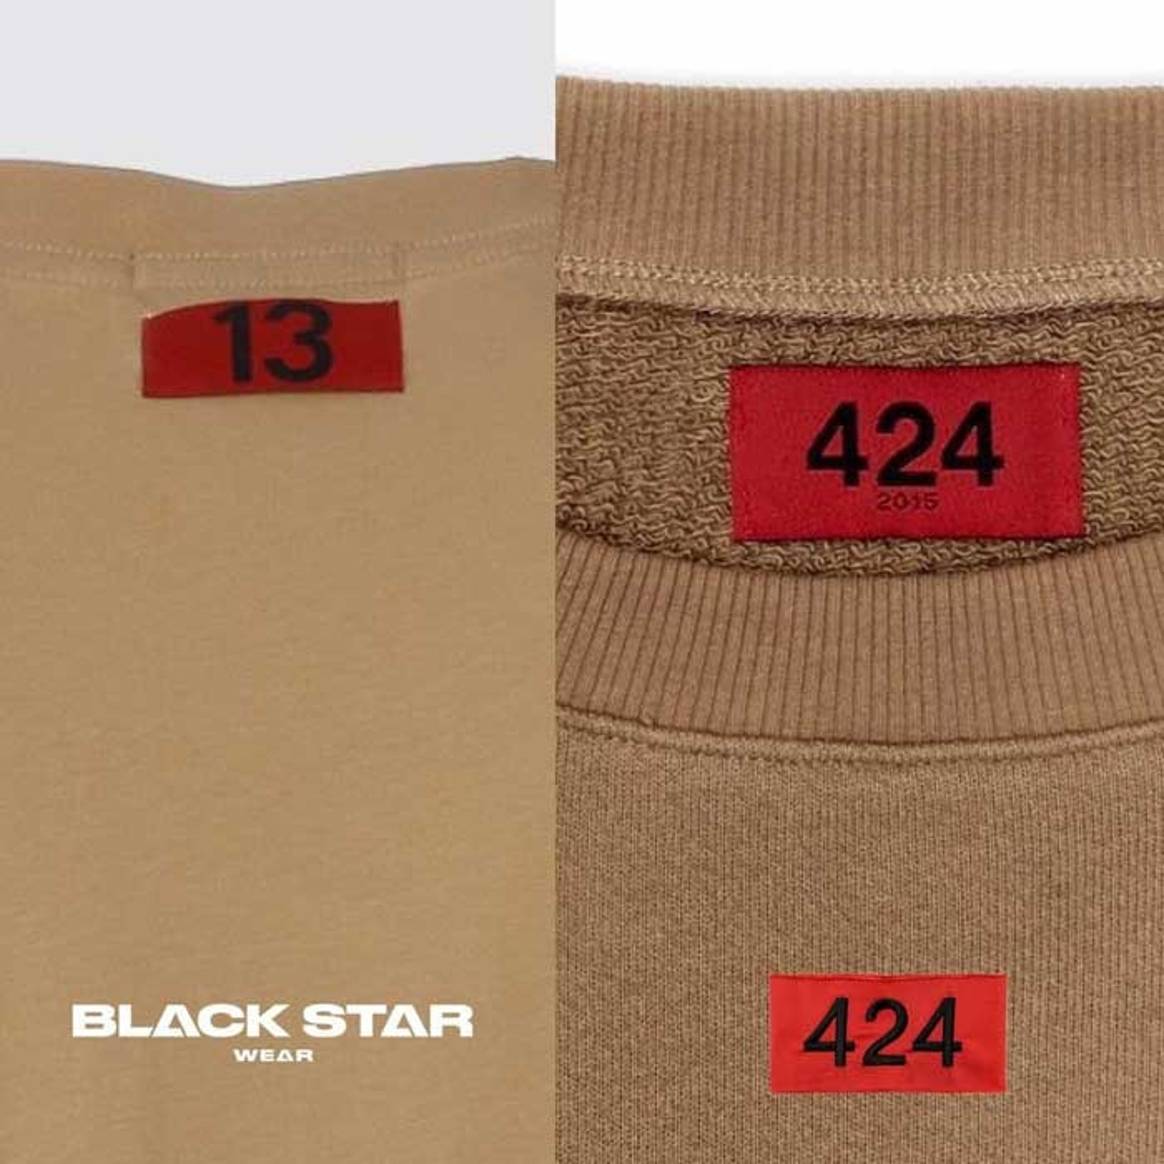 Одежда Black Star оказалась копией уличного бренда из США